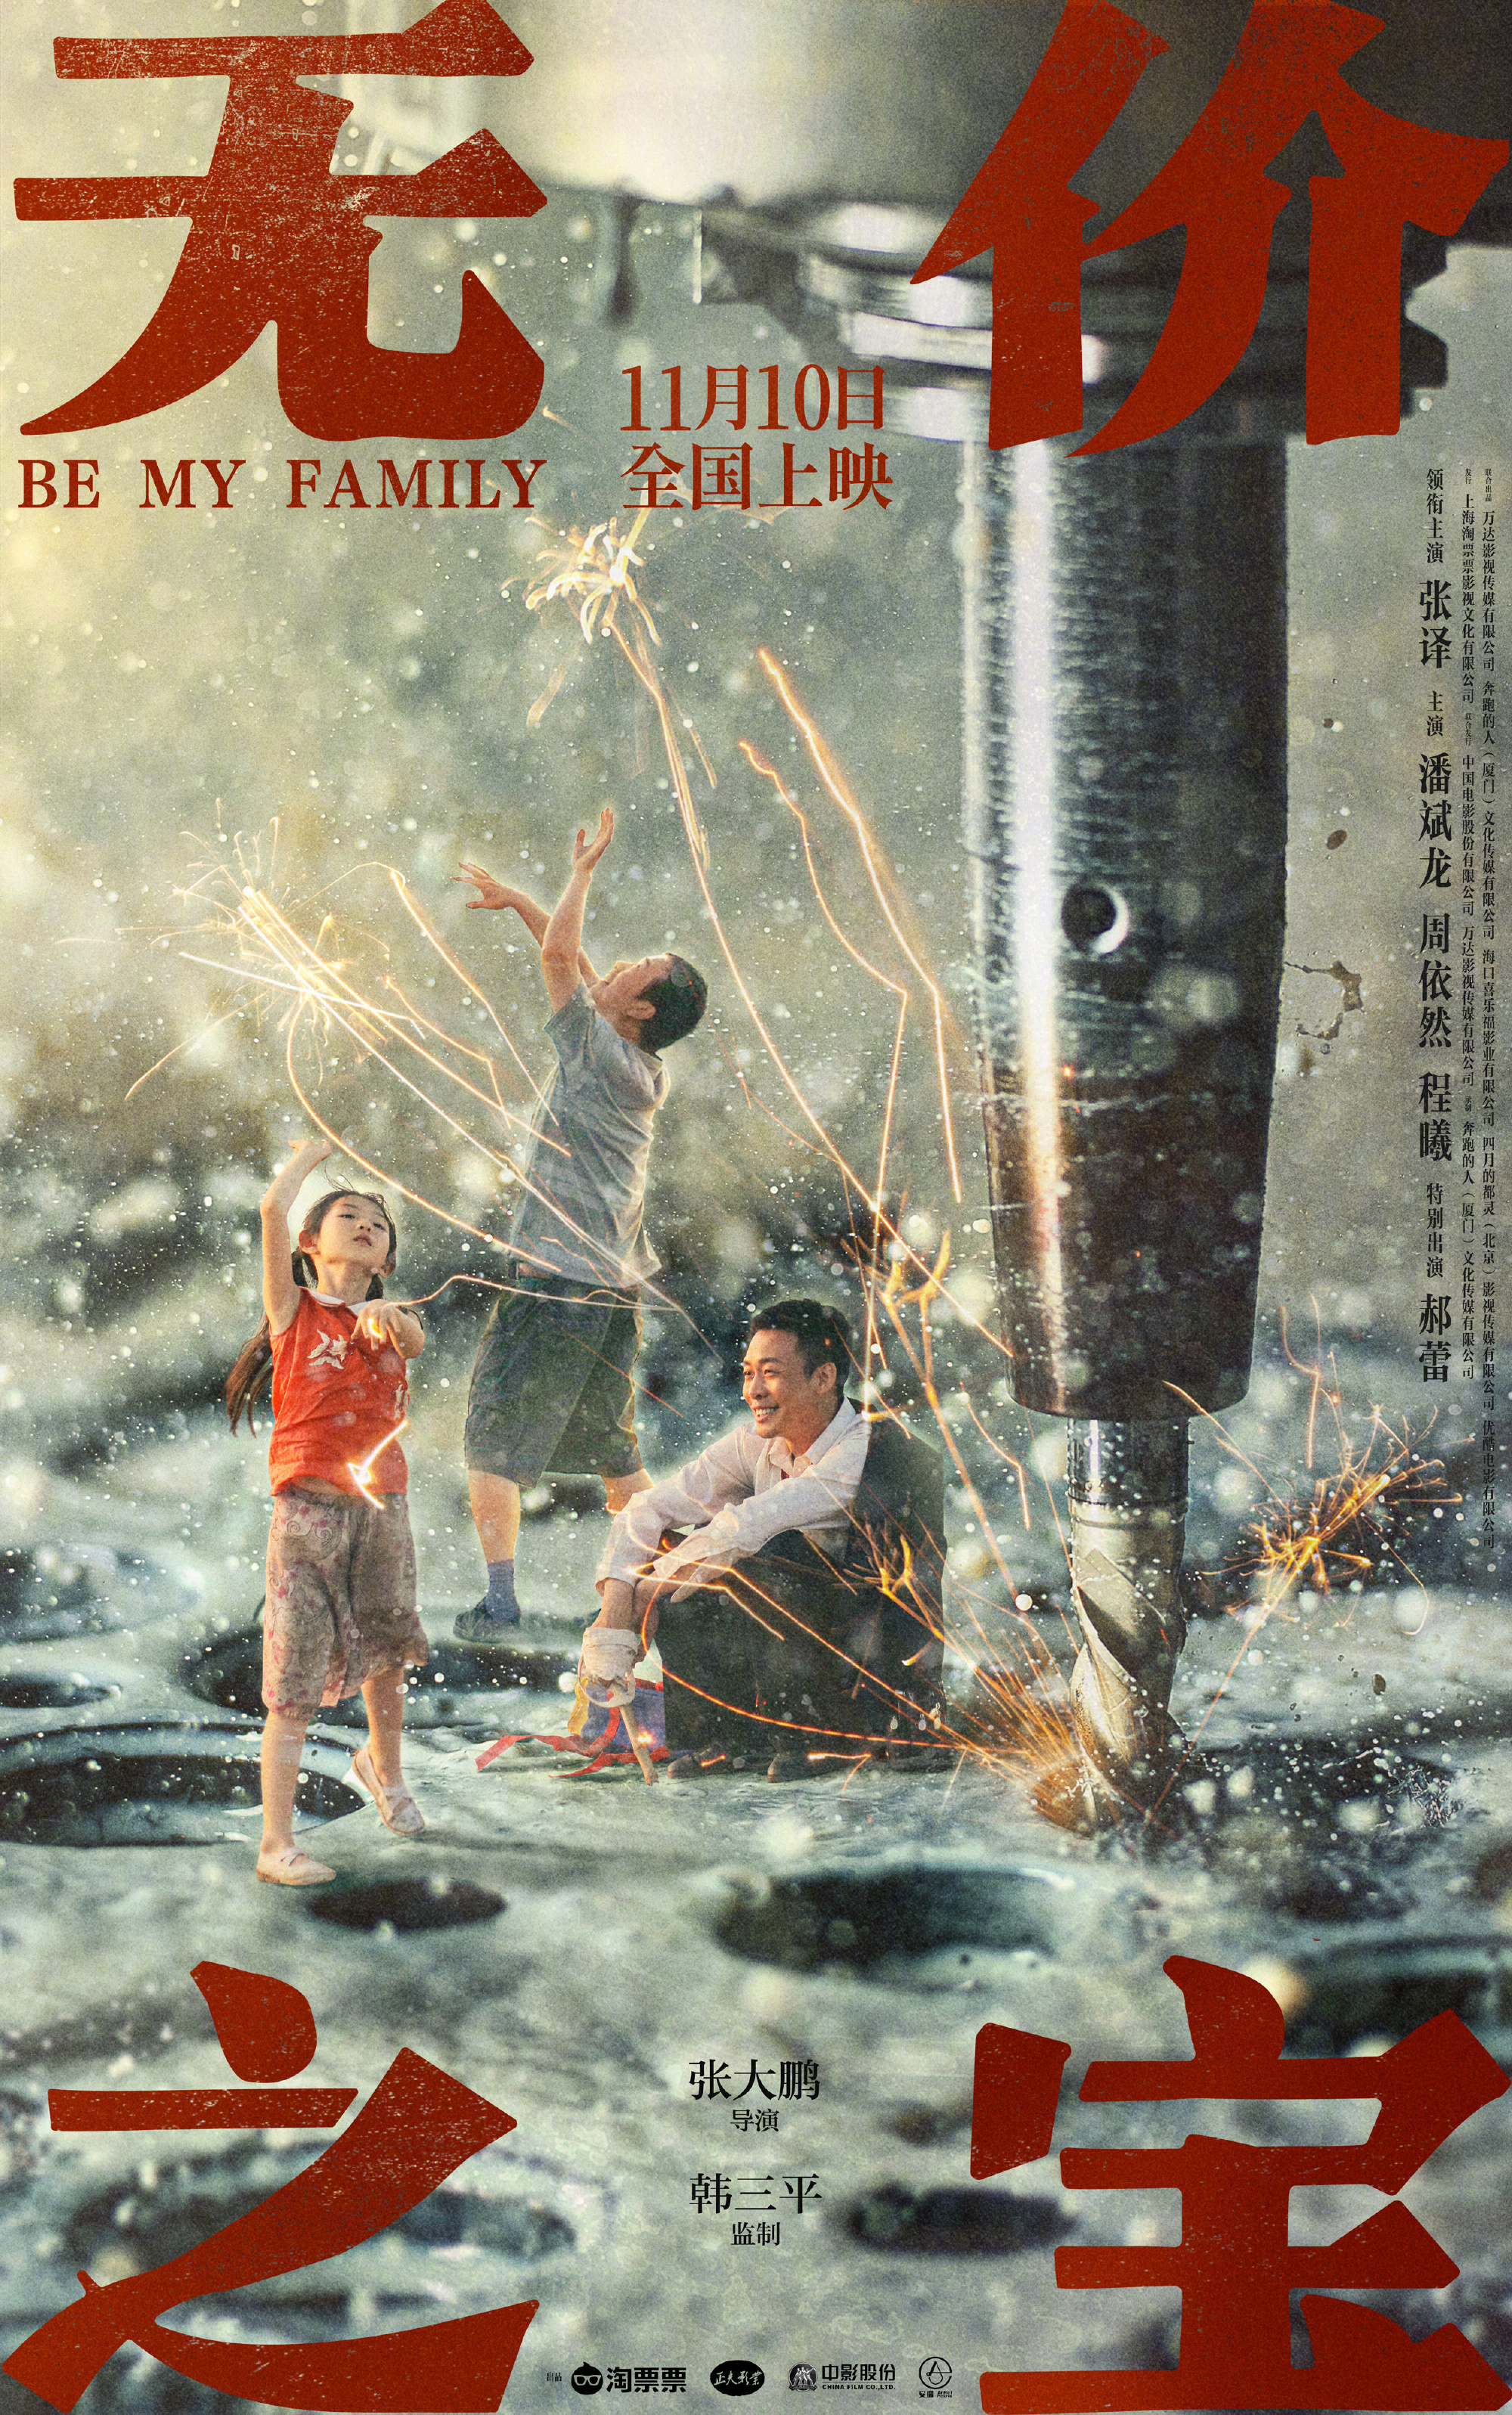 无价之宝 - Be my family